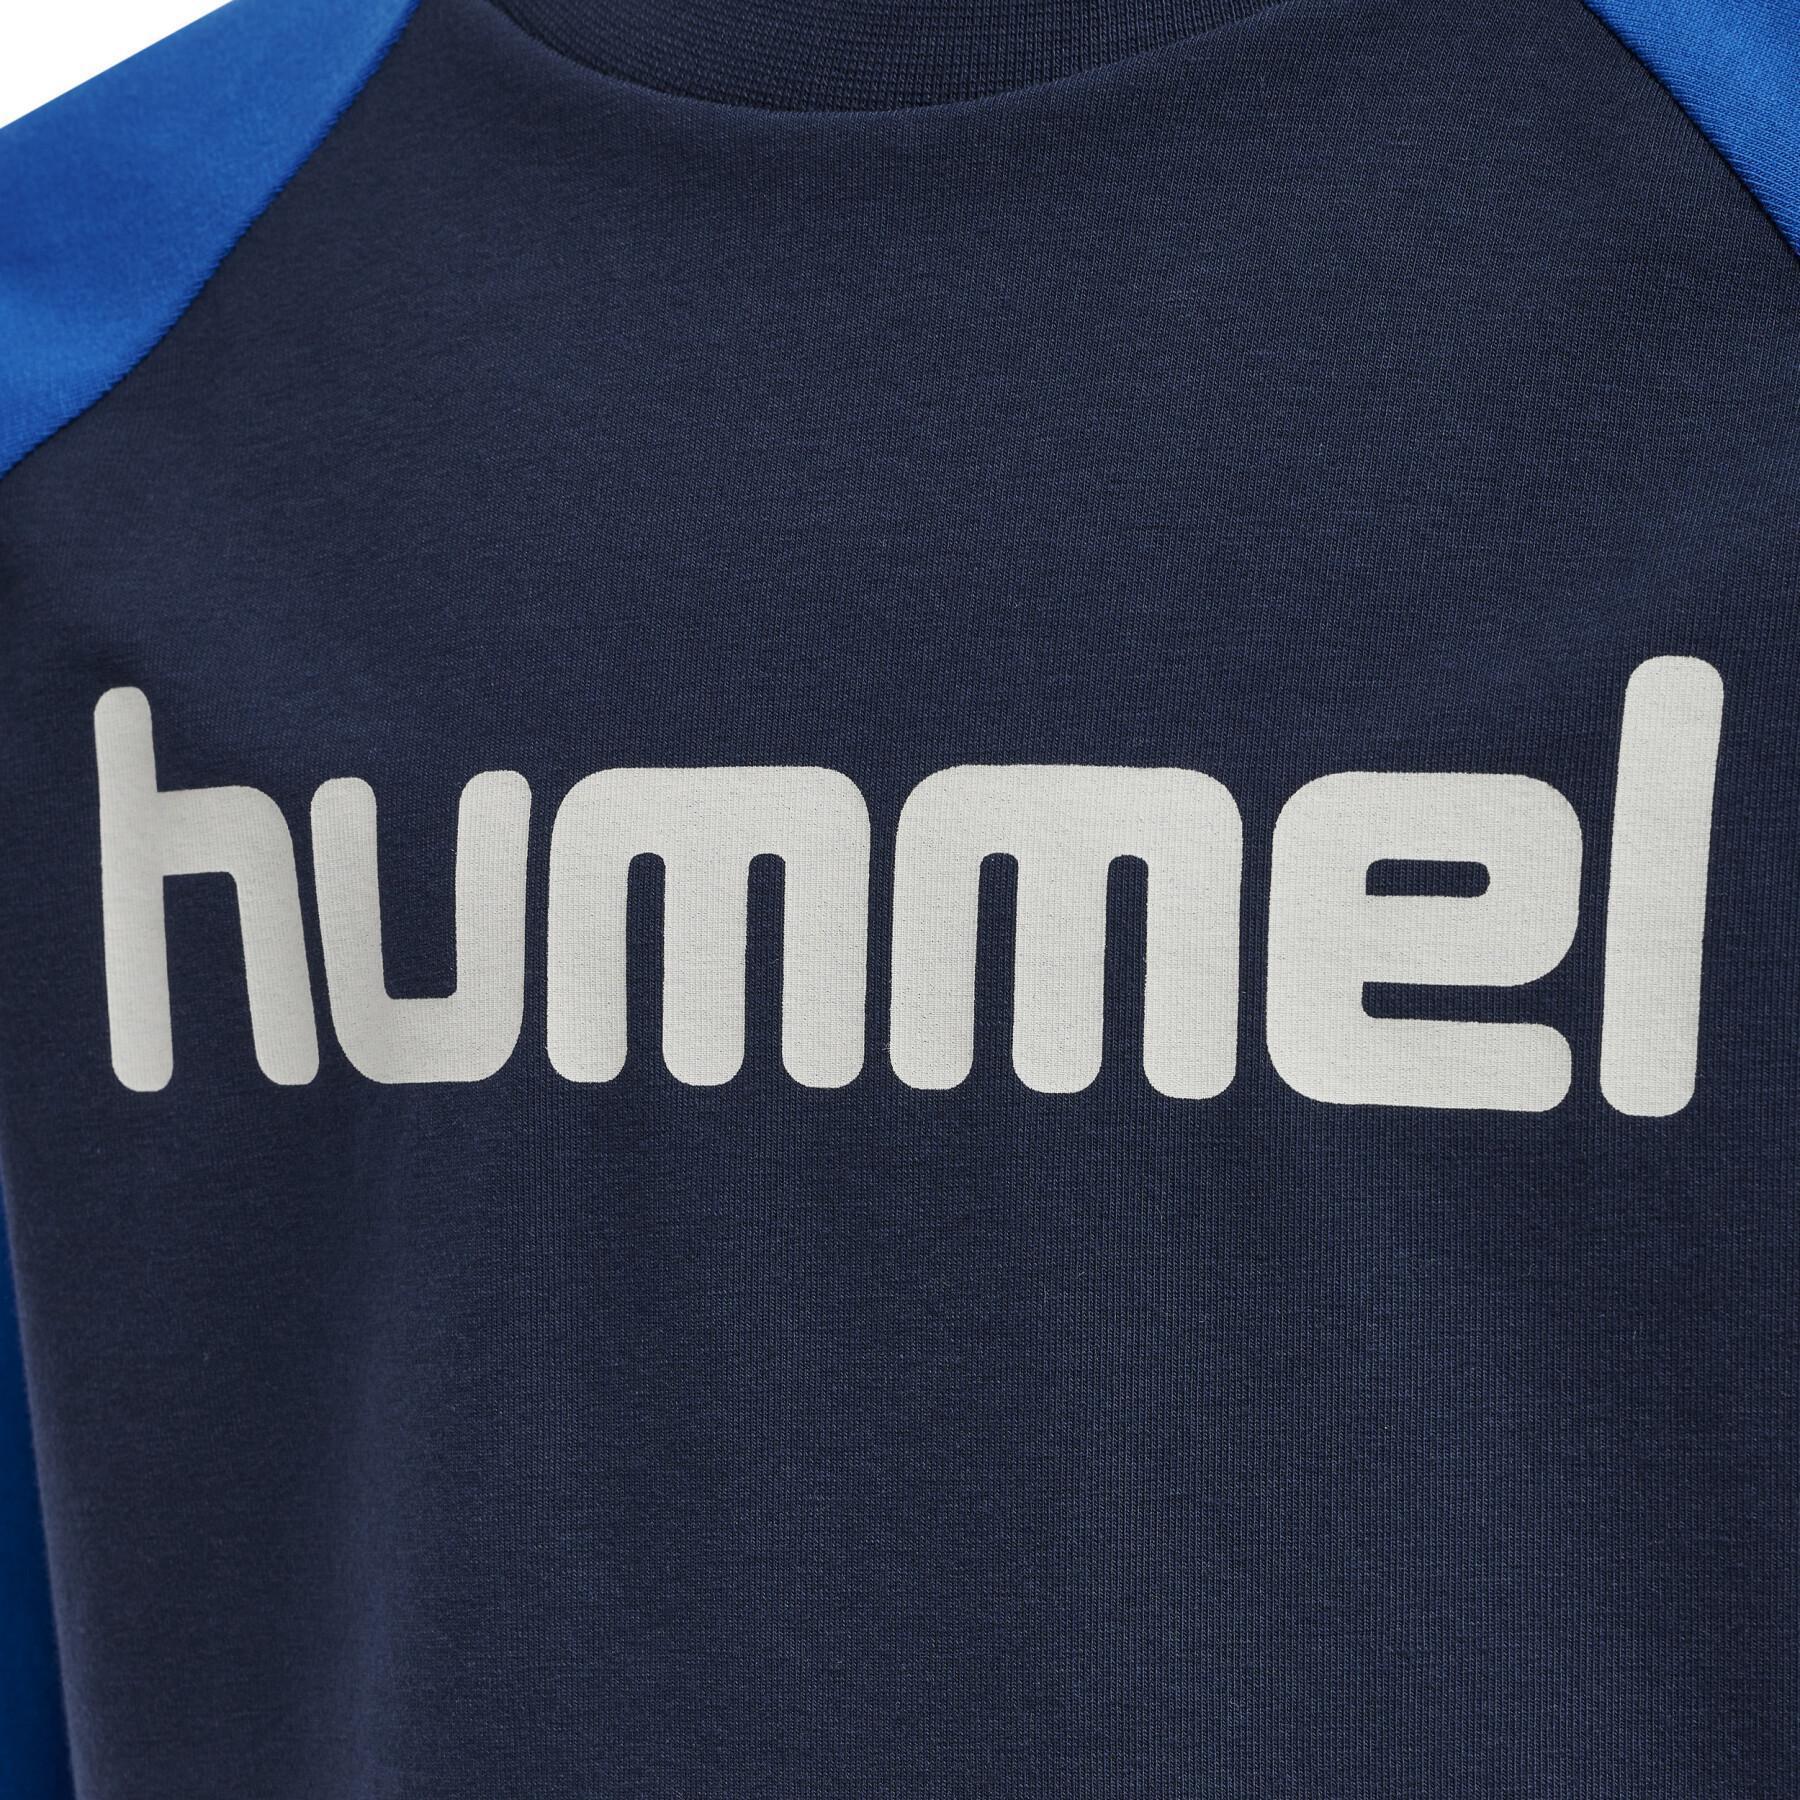 T-shirt maniche lunghe per bambini Hummel Boys